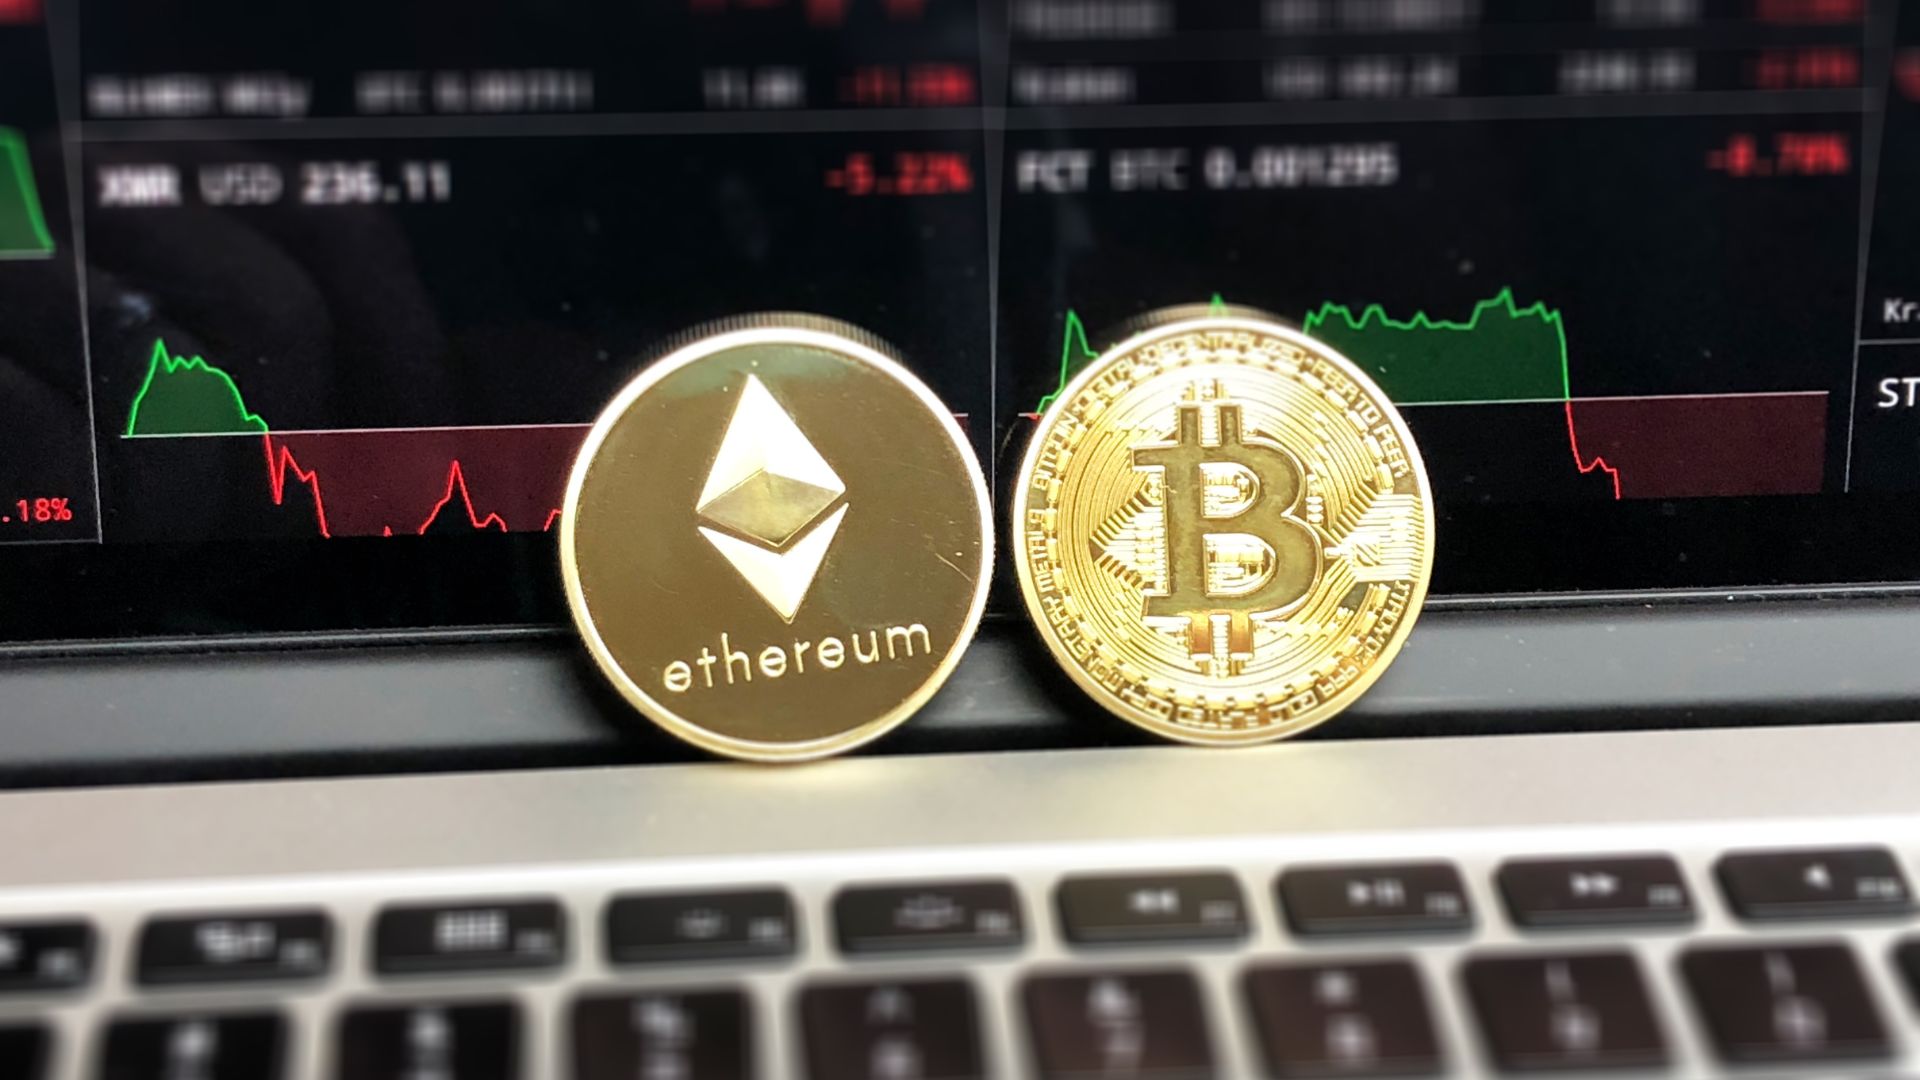 Bitcoin ou ethereum - O que vale mais a longo prazo?